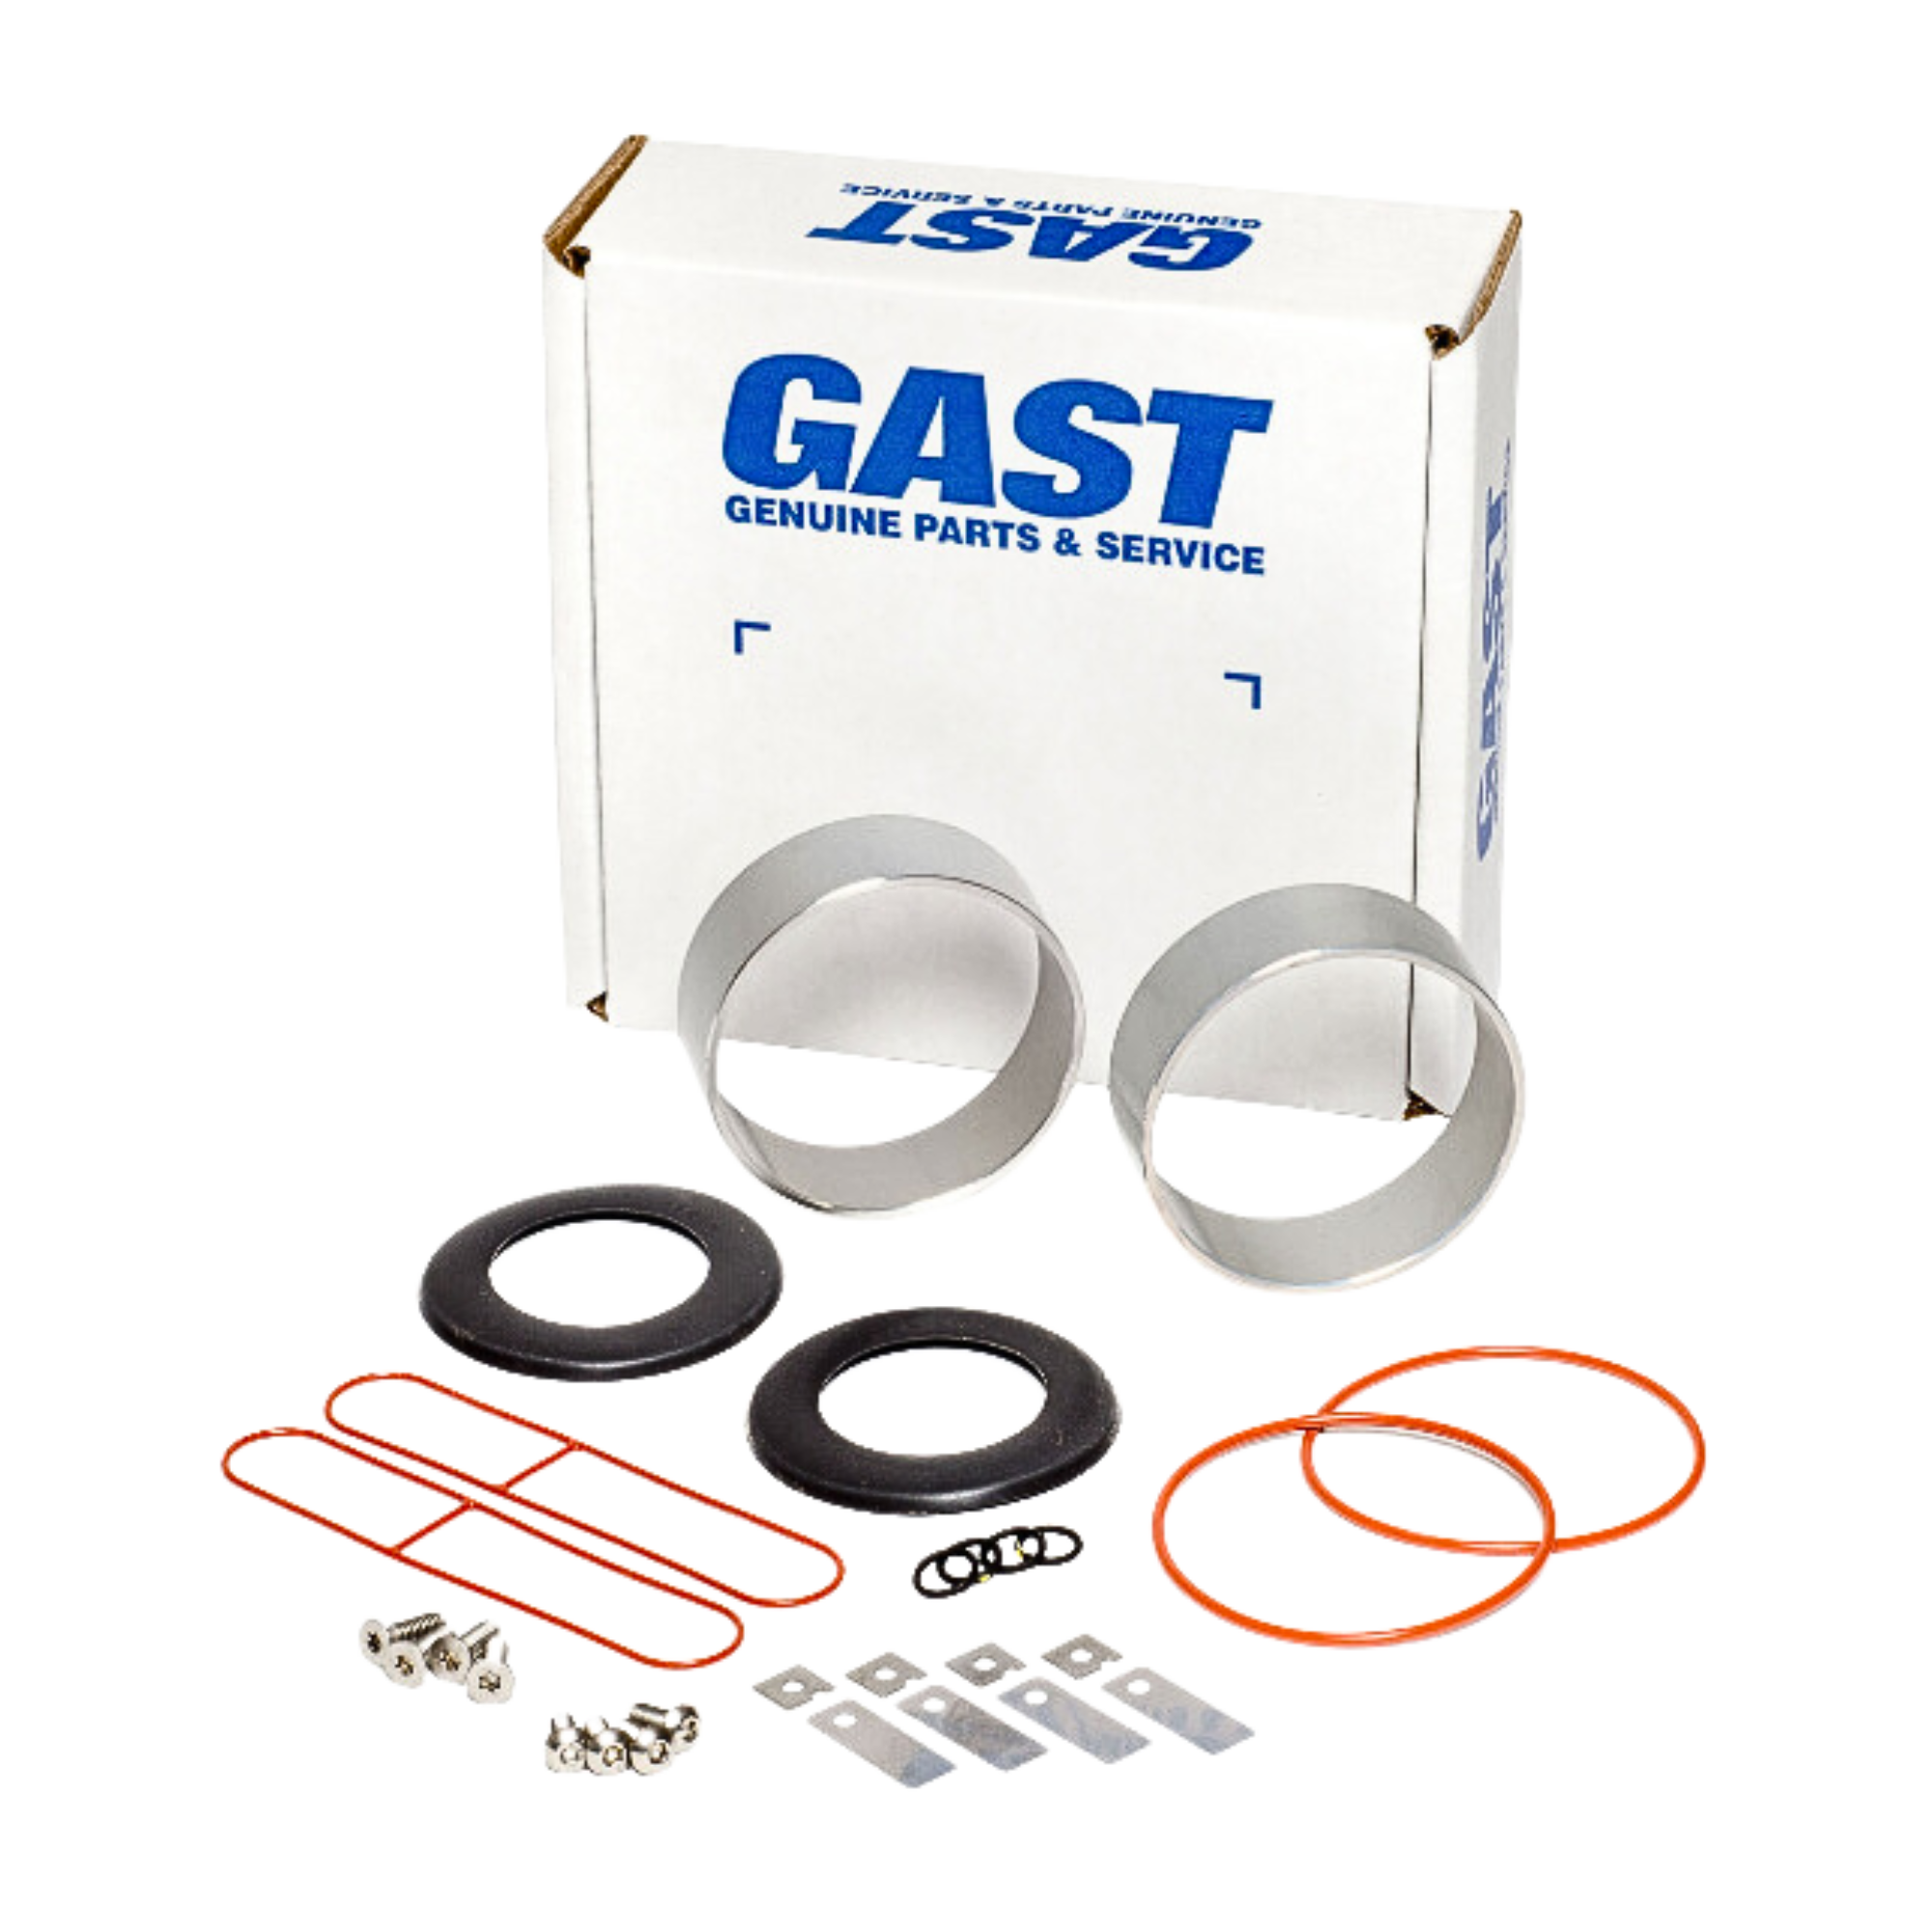 Gast | 72R Service Kit | K558 used on gast product line